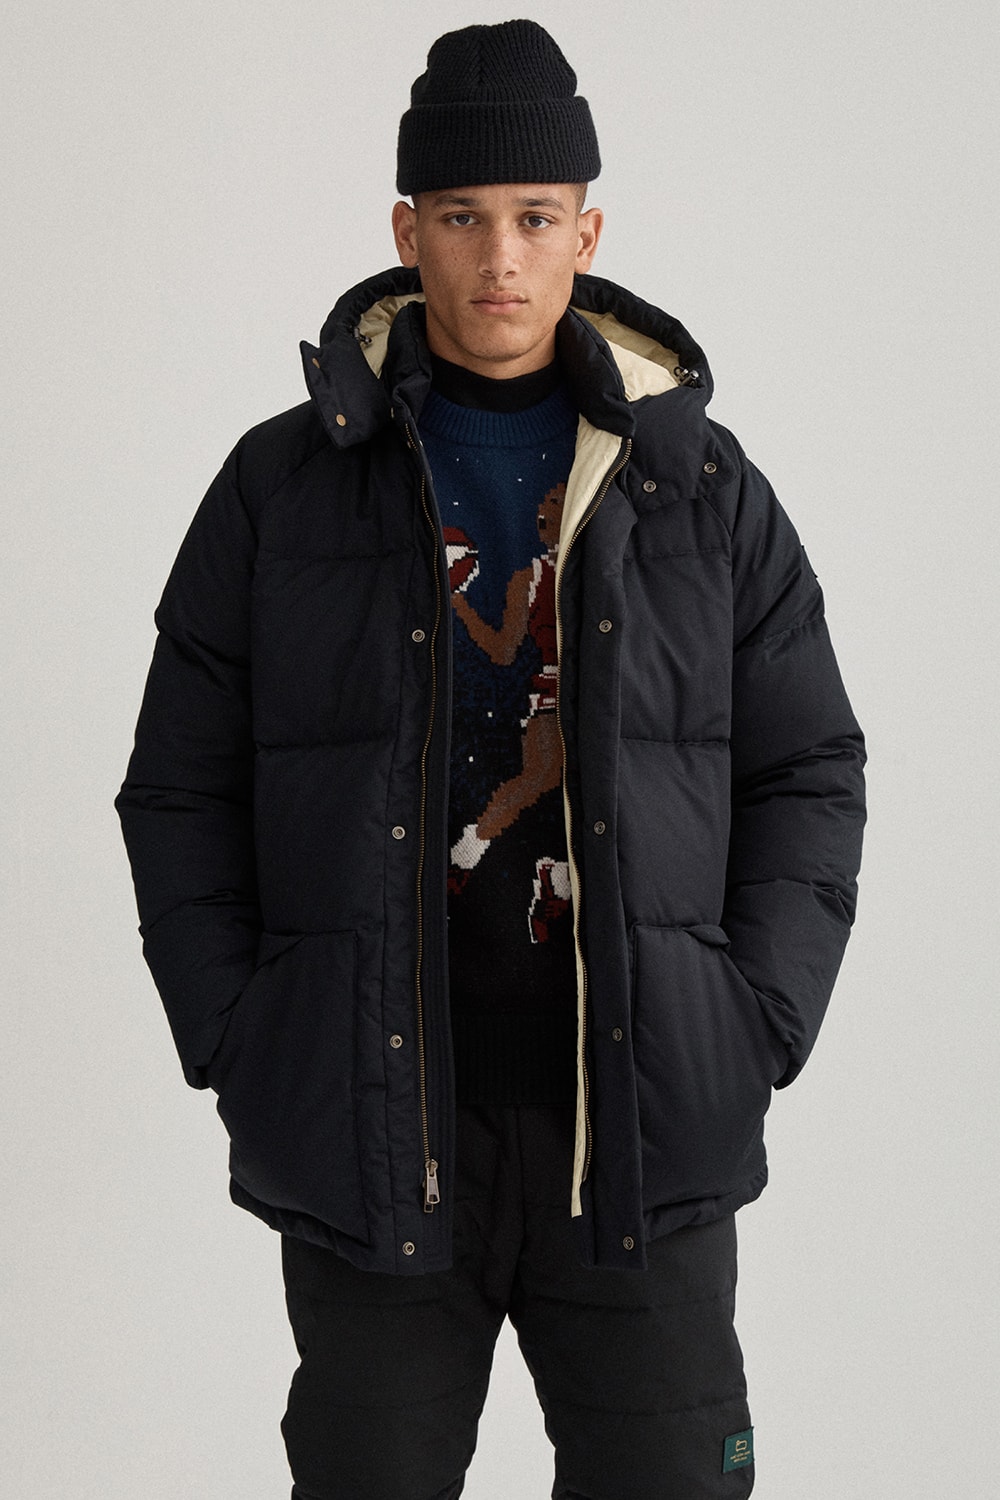 에임 레온 도르 2019 가을, 겨울 컬렉션 룩북 - 니트웨어, 플리스 재킷, 티셔츠 